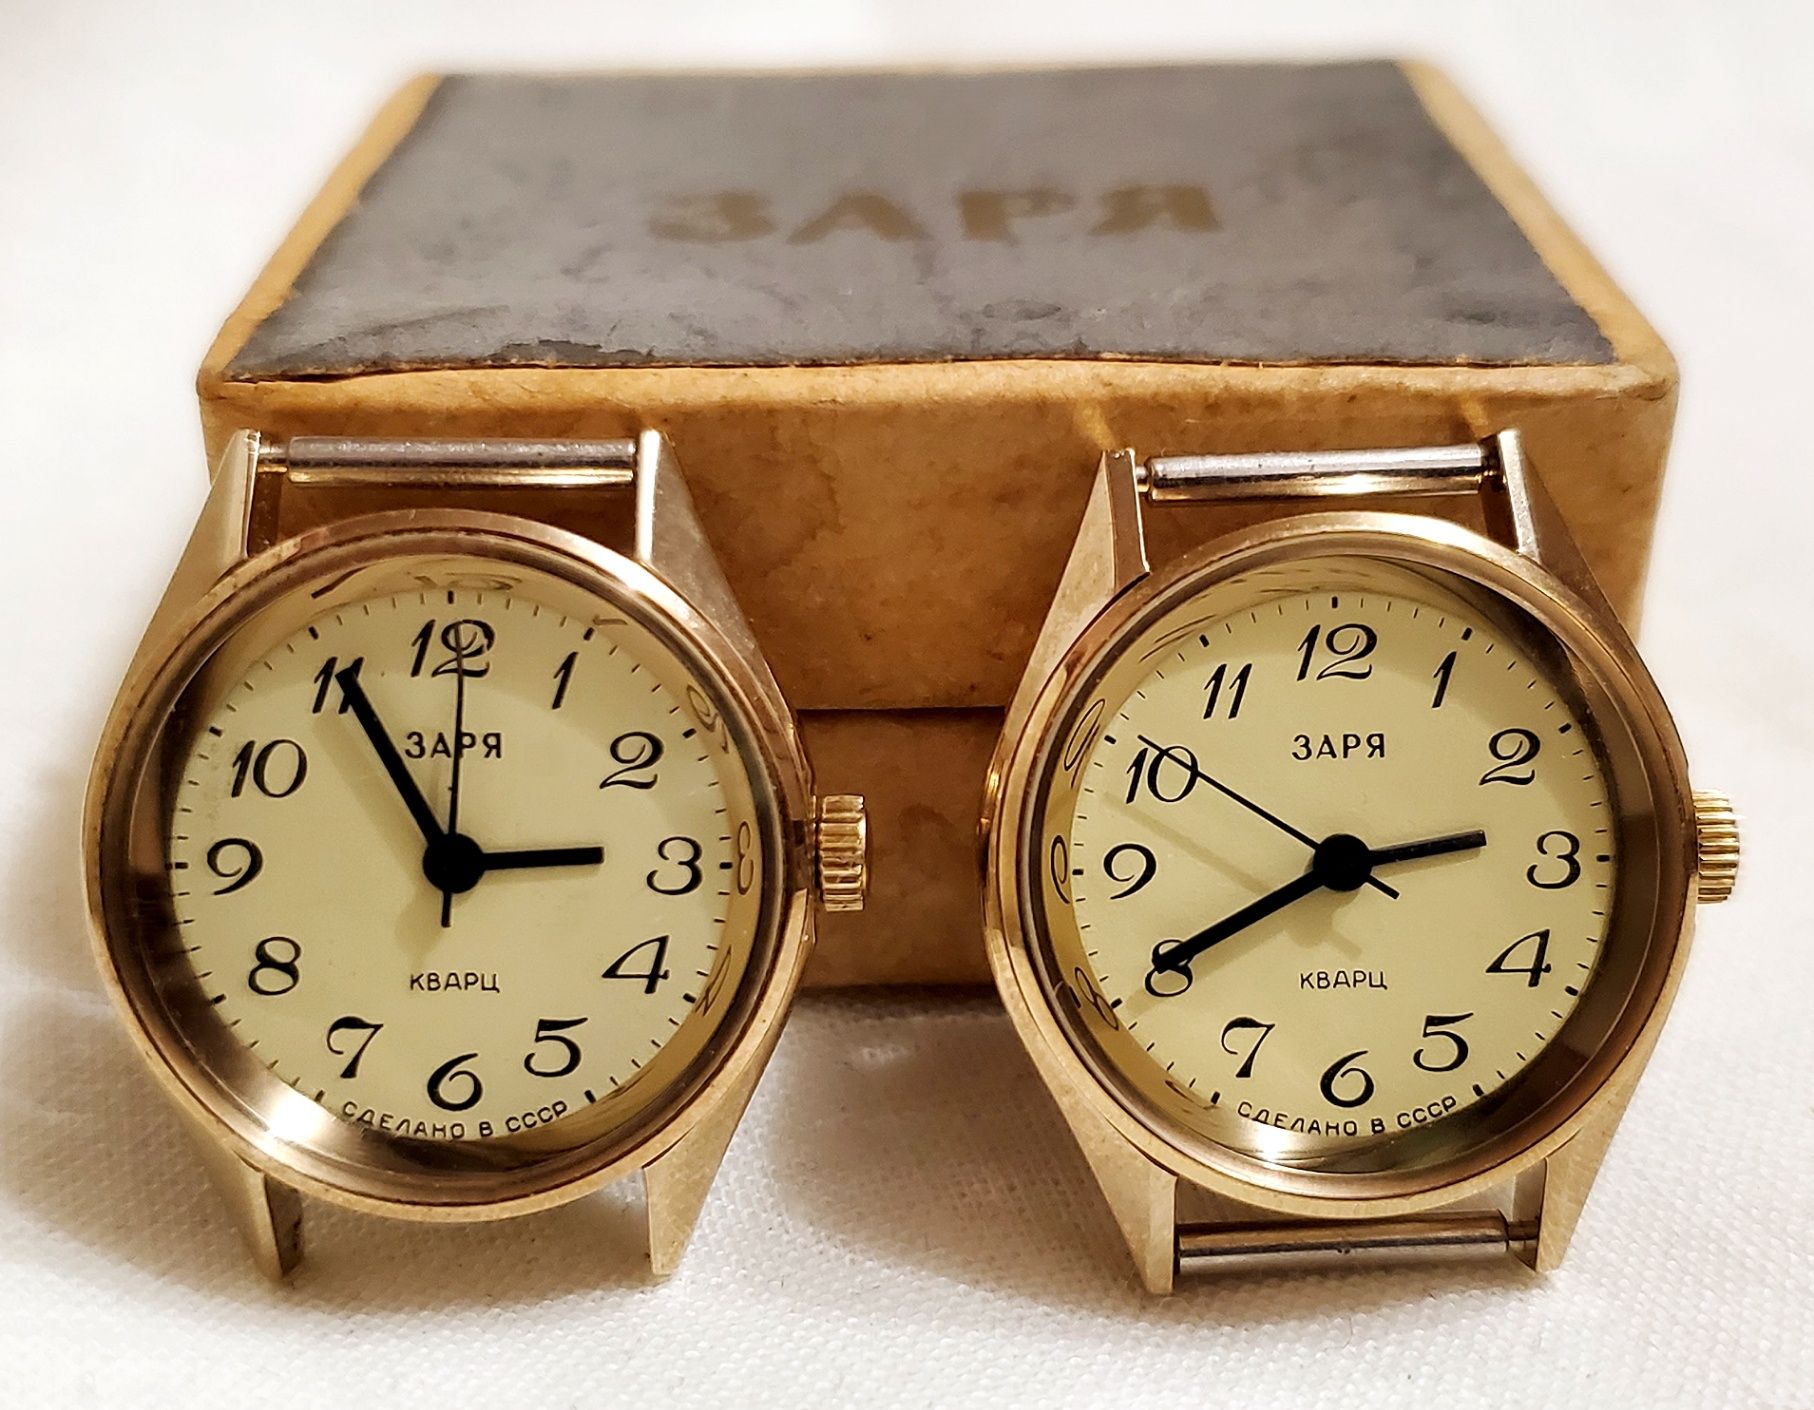 Советские часы "Заря-Кварц" в корпусе золотого цвета новые Пенза ссср